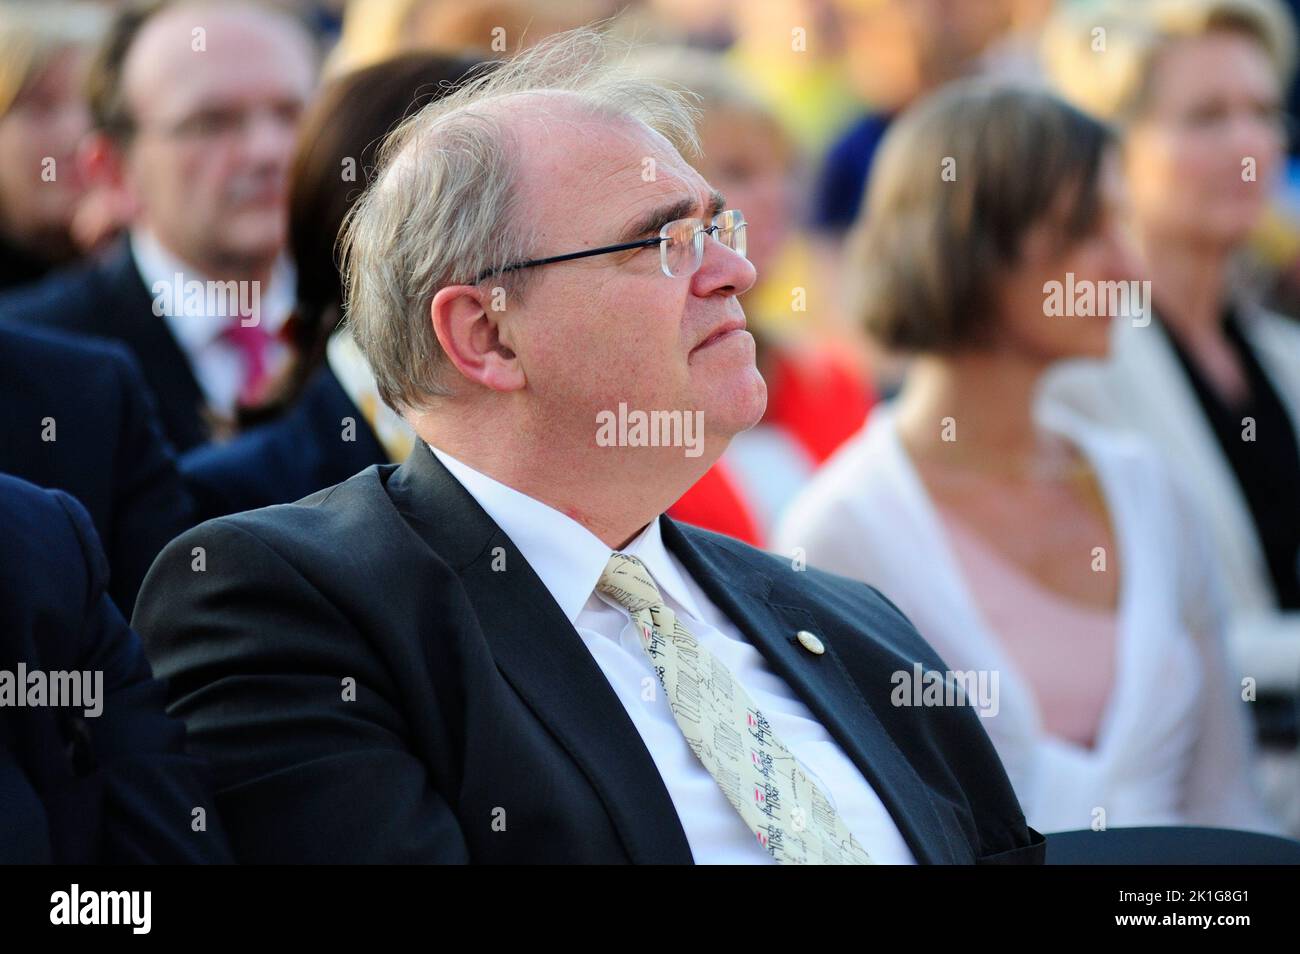 Viena, Austria. 08 de mayo de 2015. Wolfgang Brandstetter, Ministro de Justicia del Gobierno Federal de Austria de 2013 a 2017 Foto de stock